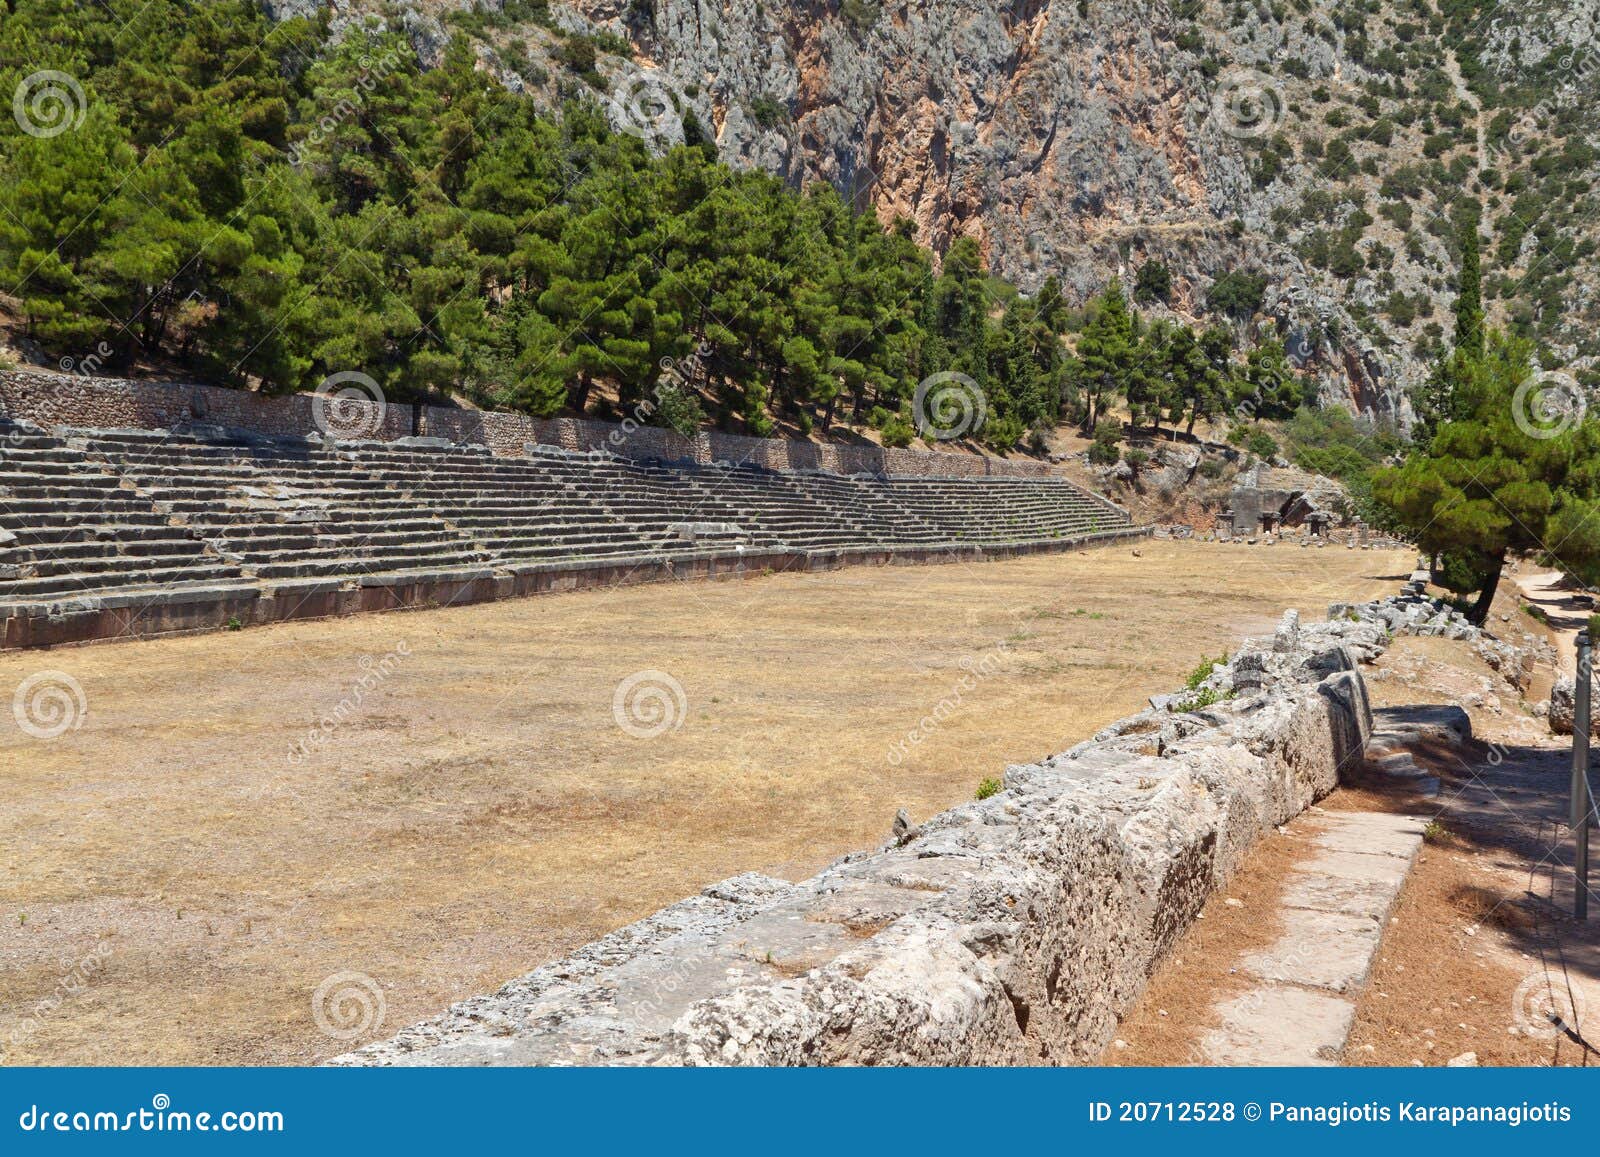 ancient stadium at delfi in greece